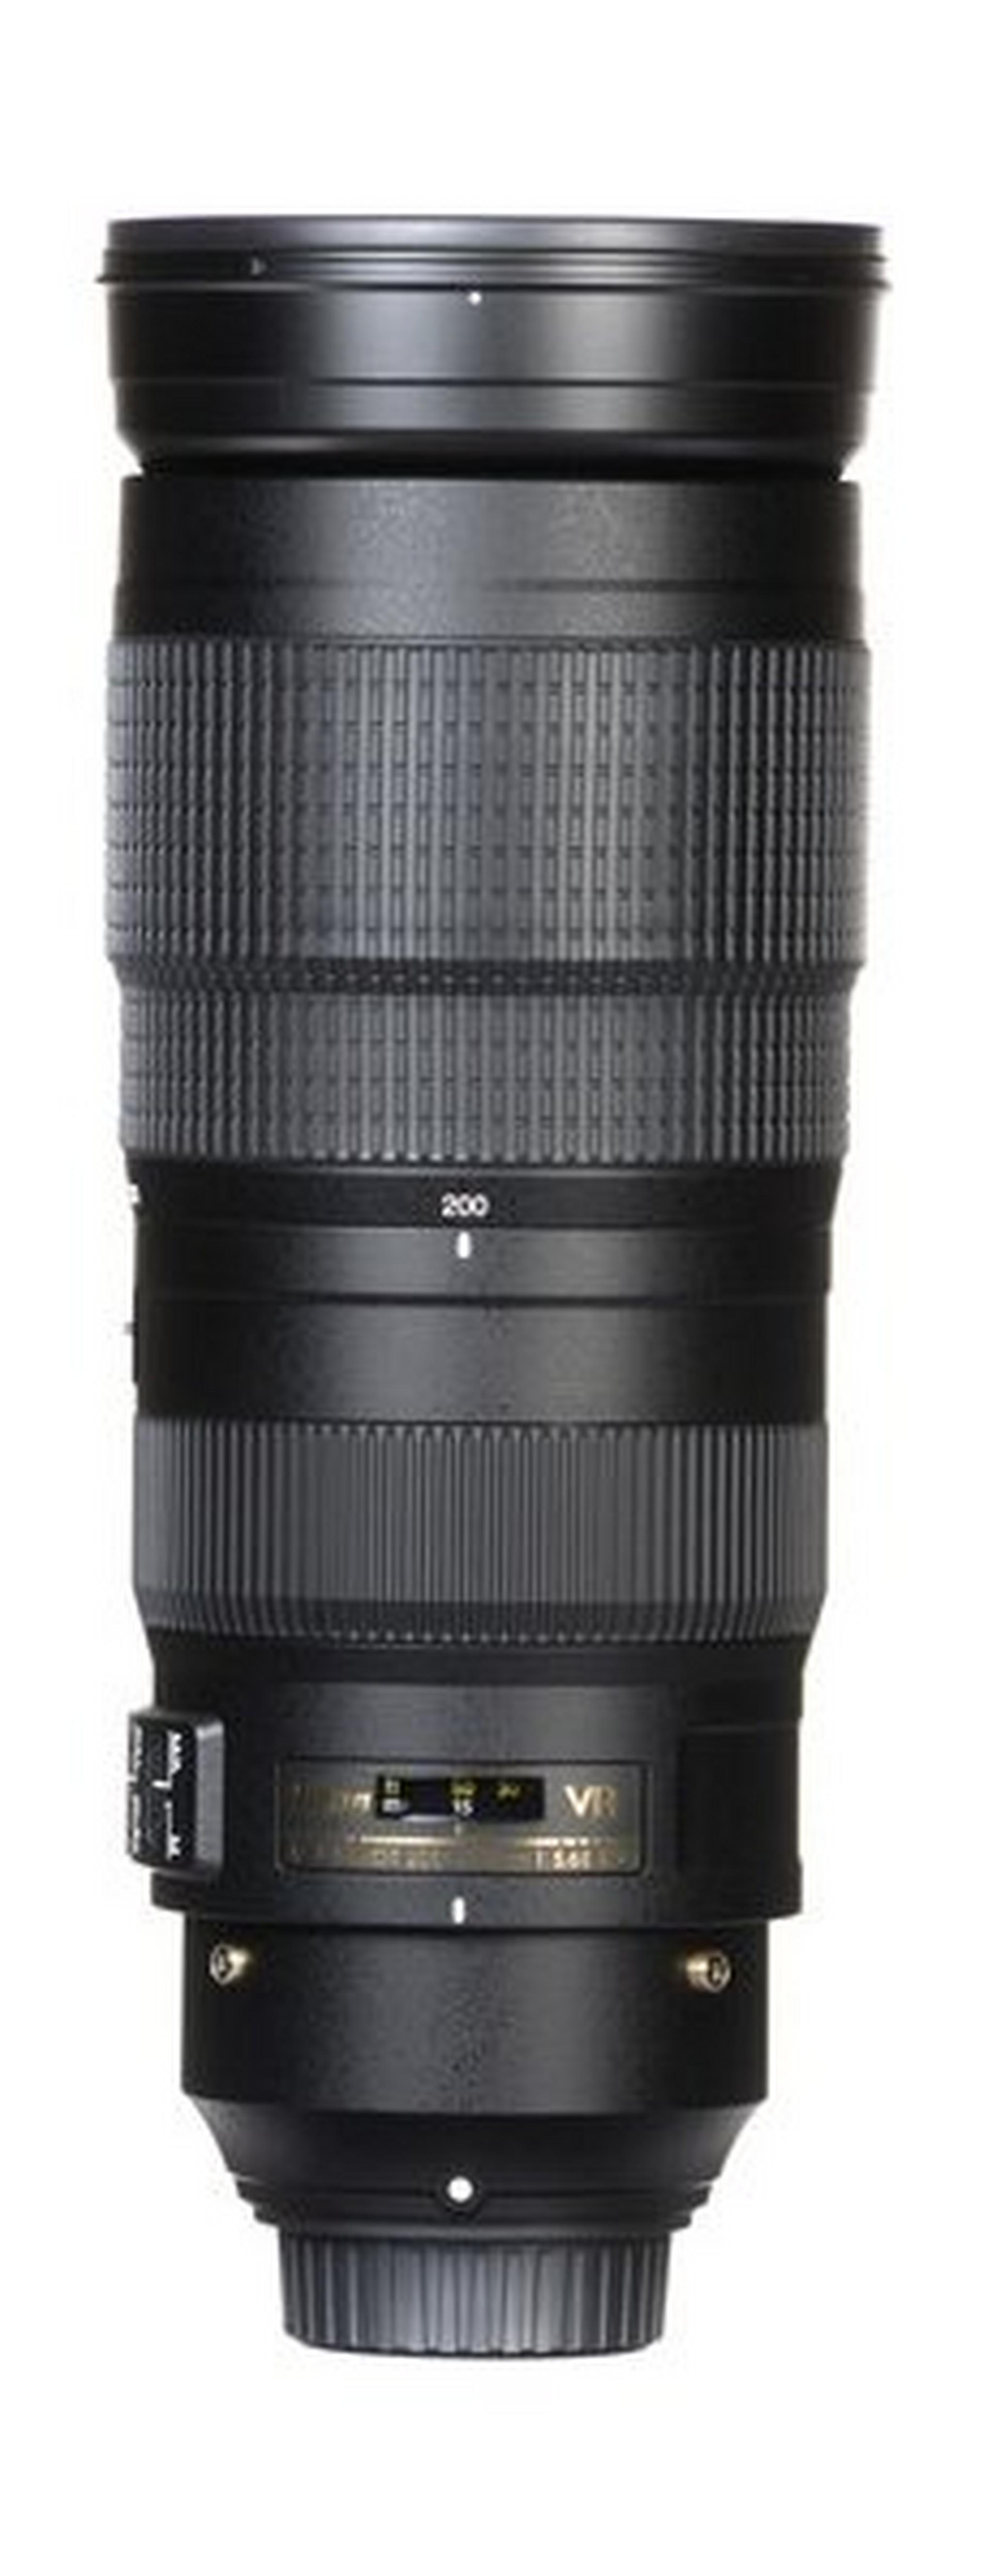 Nikon AF-S FX NIKKOR 200-500mm f/5.6E ED Vibration Reduction Zoom Lens